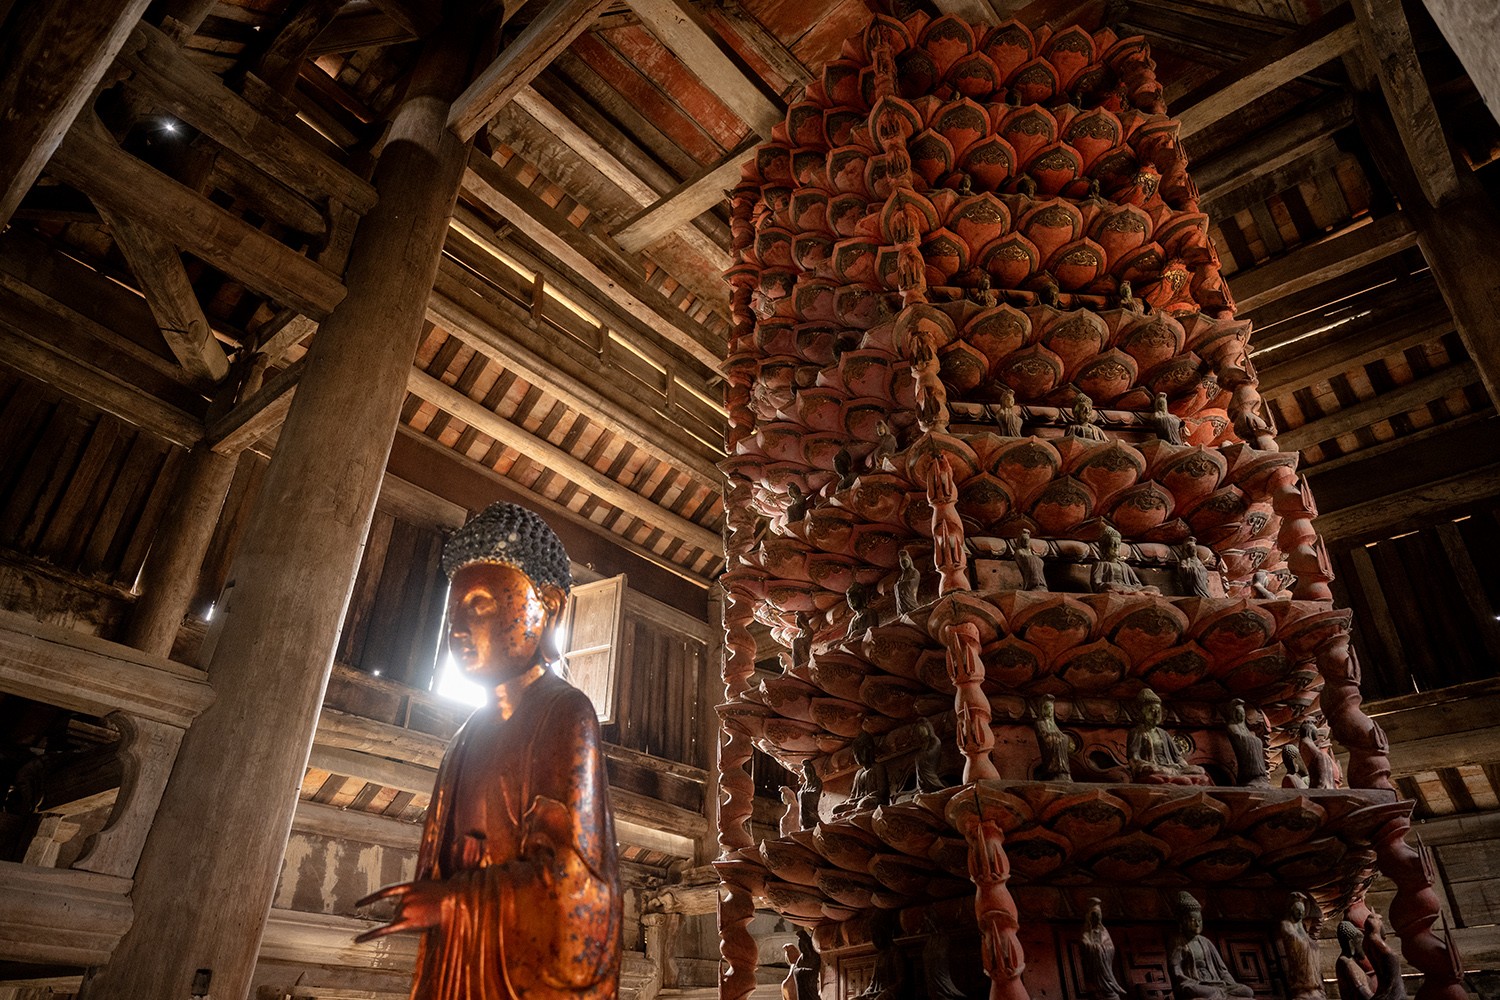 Vào ngày lễ Phật, chỉ cần 2 người đẩy, Cửu phẩm có thể quay nhẹ nhàng. Tòa Cửu phẩm liên hoa là công trình kiến trúc Phật giáo độc đáo chỉ có ở Việt Nam.